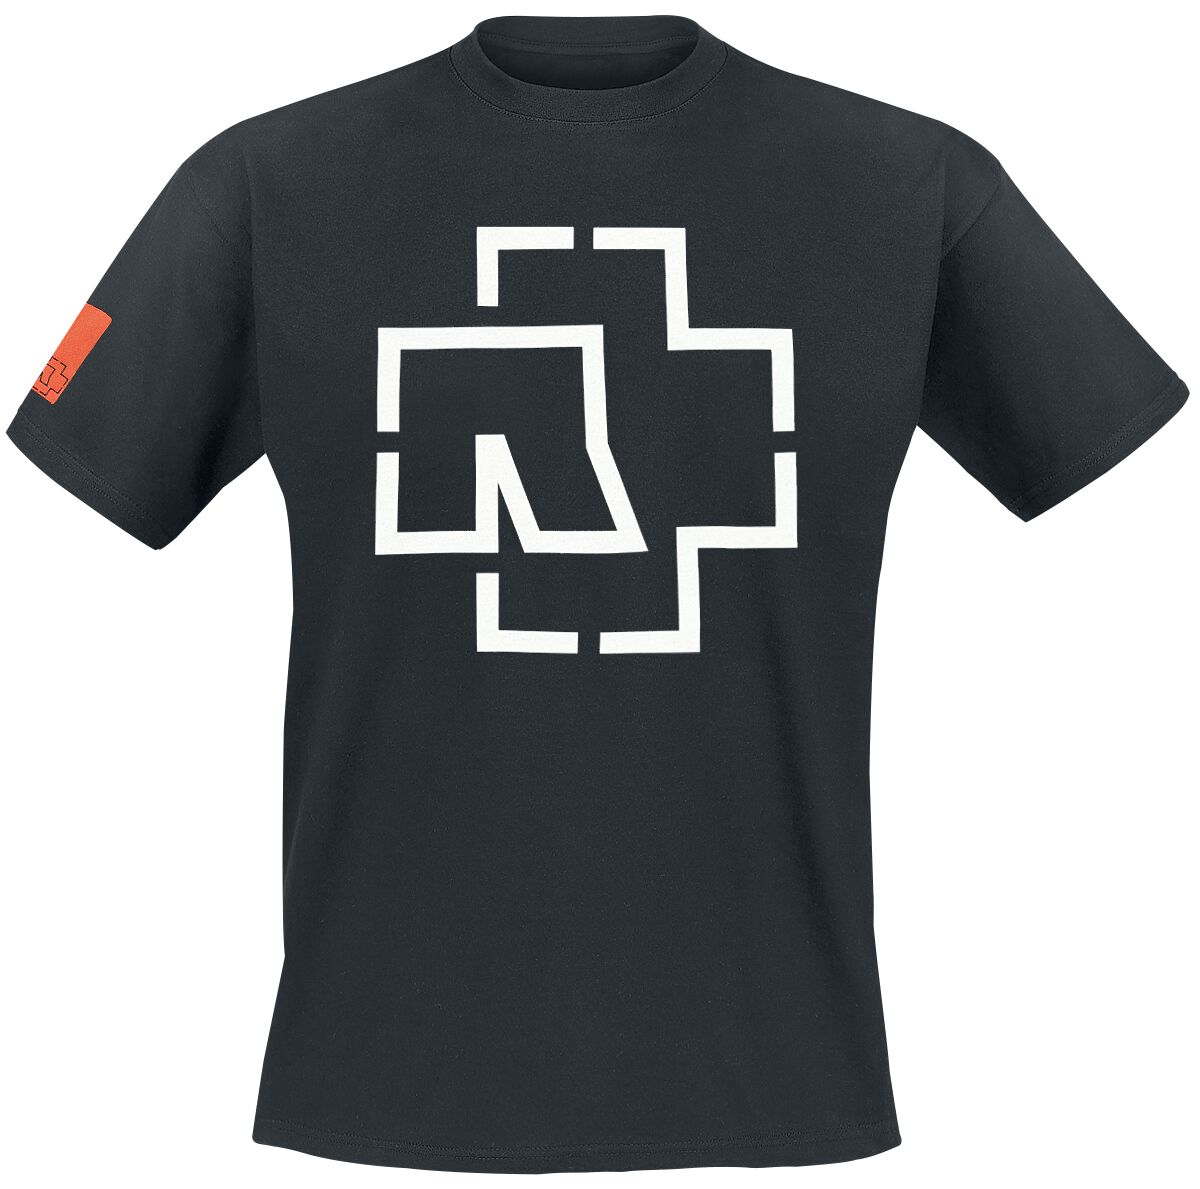 Rammstein T-Shirt - Logo - S bis 3XL - für Männer - Größe XL - schwarz  - Lizenziertes Merchandise!